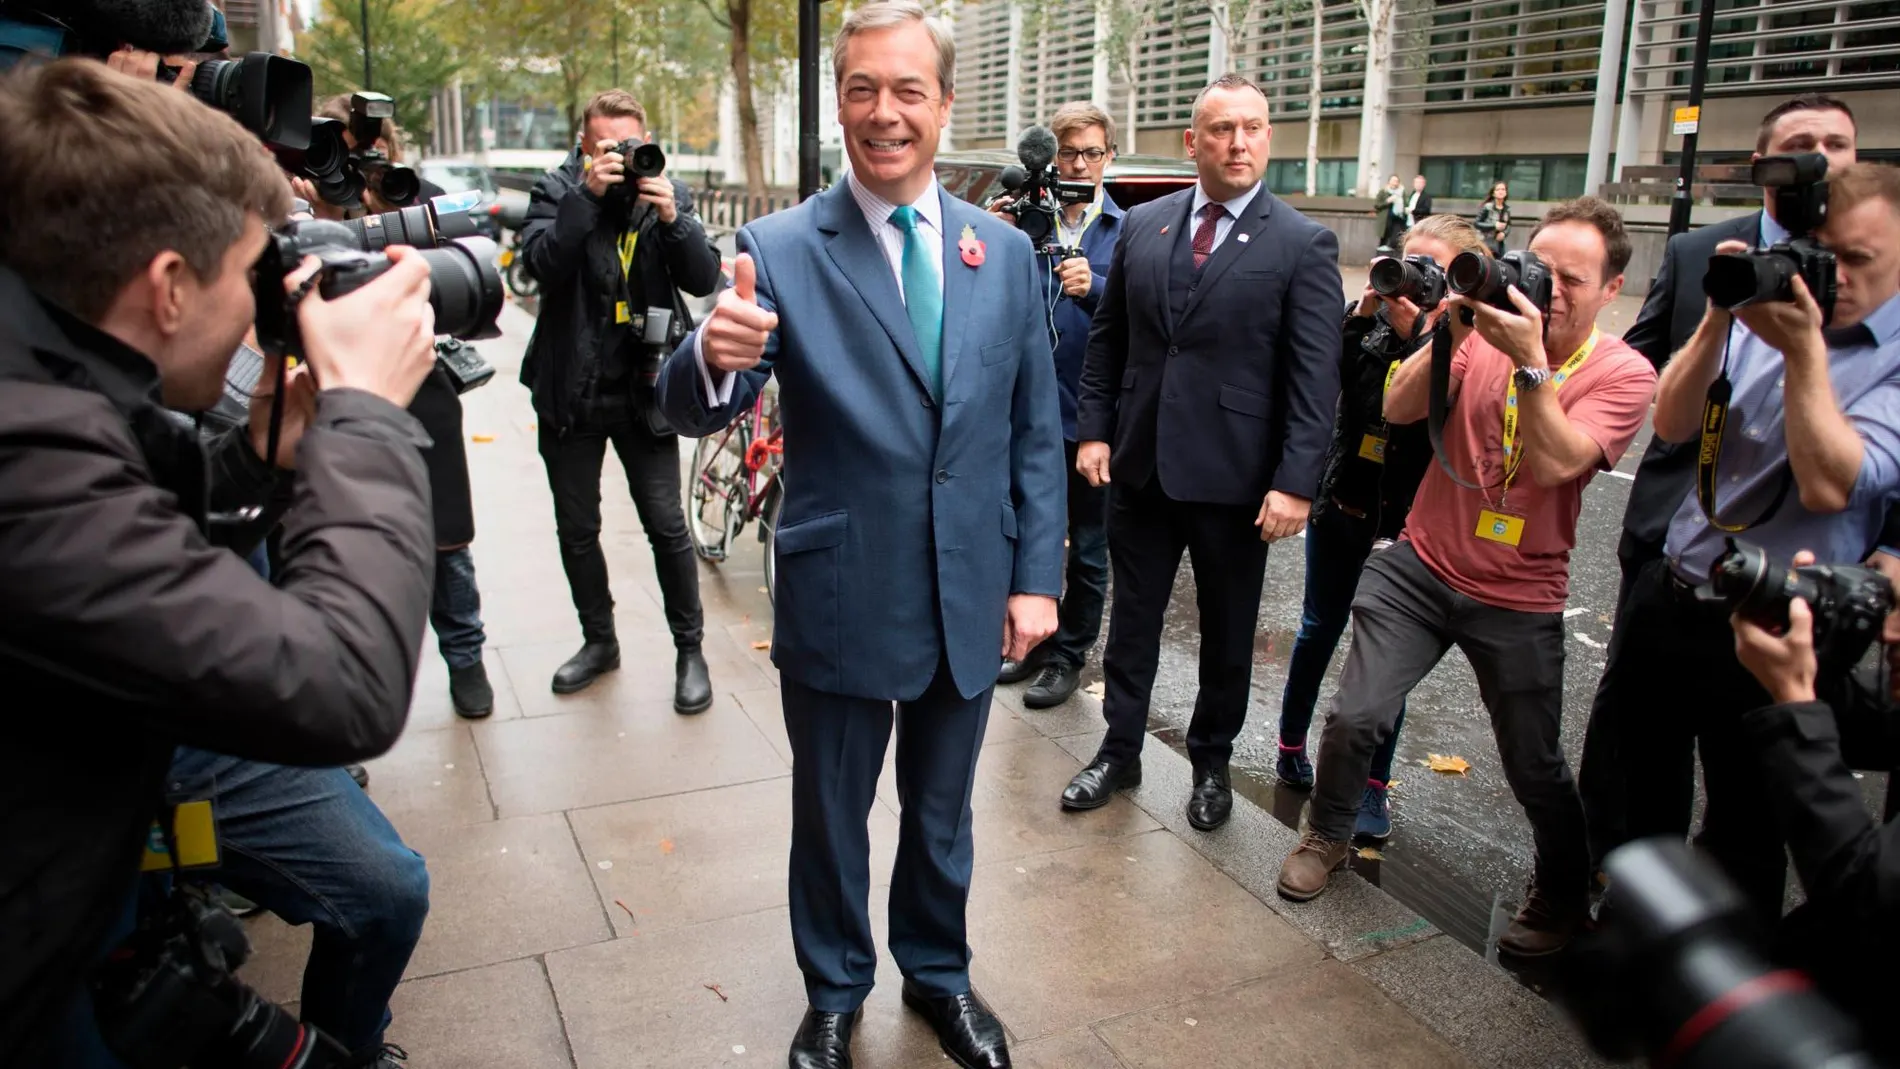 El líder del Partido del Brexit, Nigel Farage, presentó, ayer en Londres, su manifiesto electoral